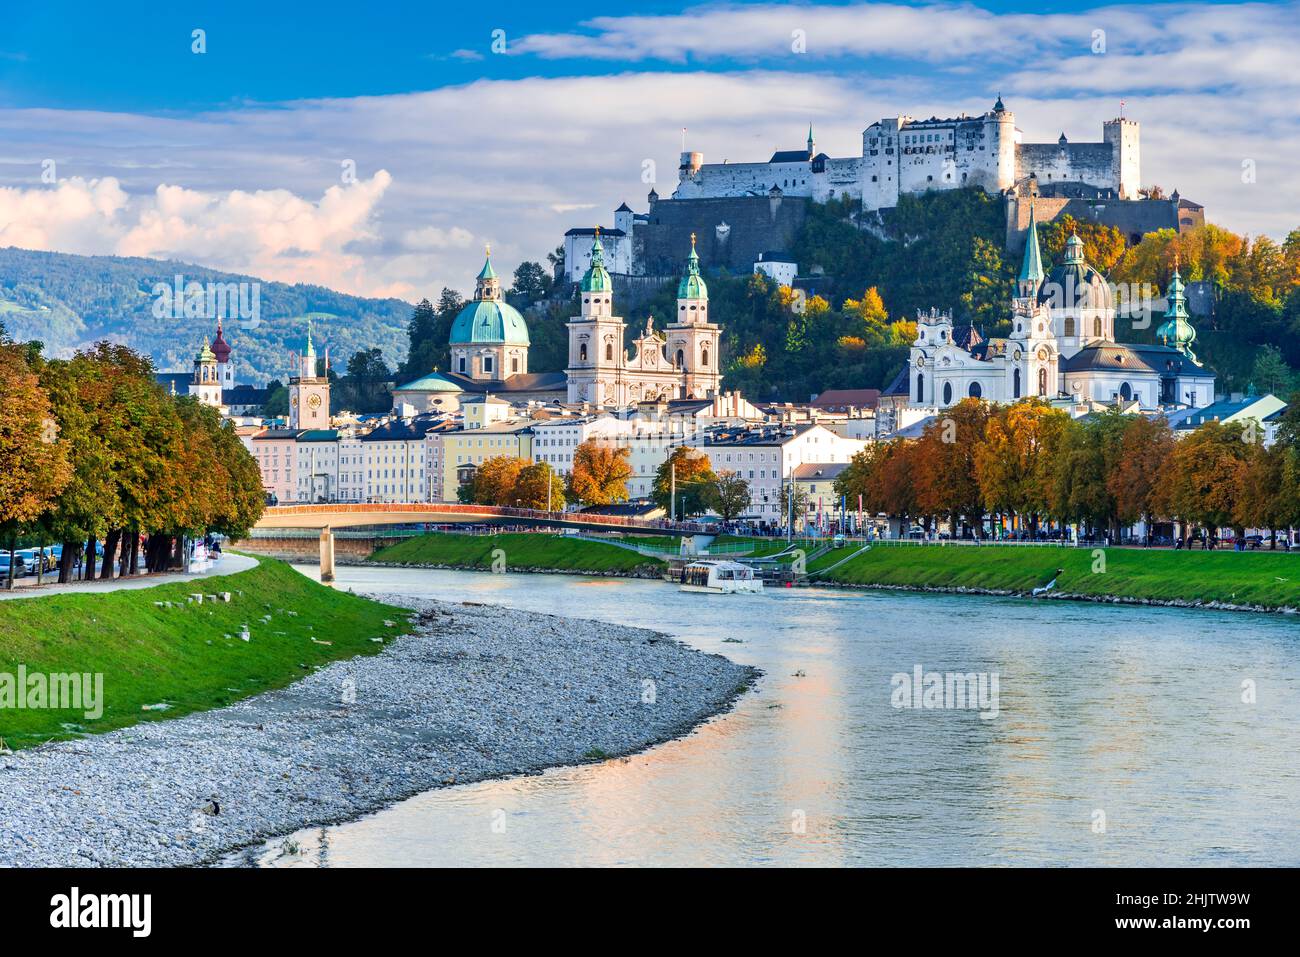 Salzbourg, Autriche.Belle vue sur les gratte-ciel de Salzbourg avec Festung Hohensalzburg et la rivière Salzach, automne, paysage de Salzburger Land. Banque D'Images